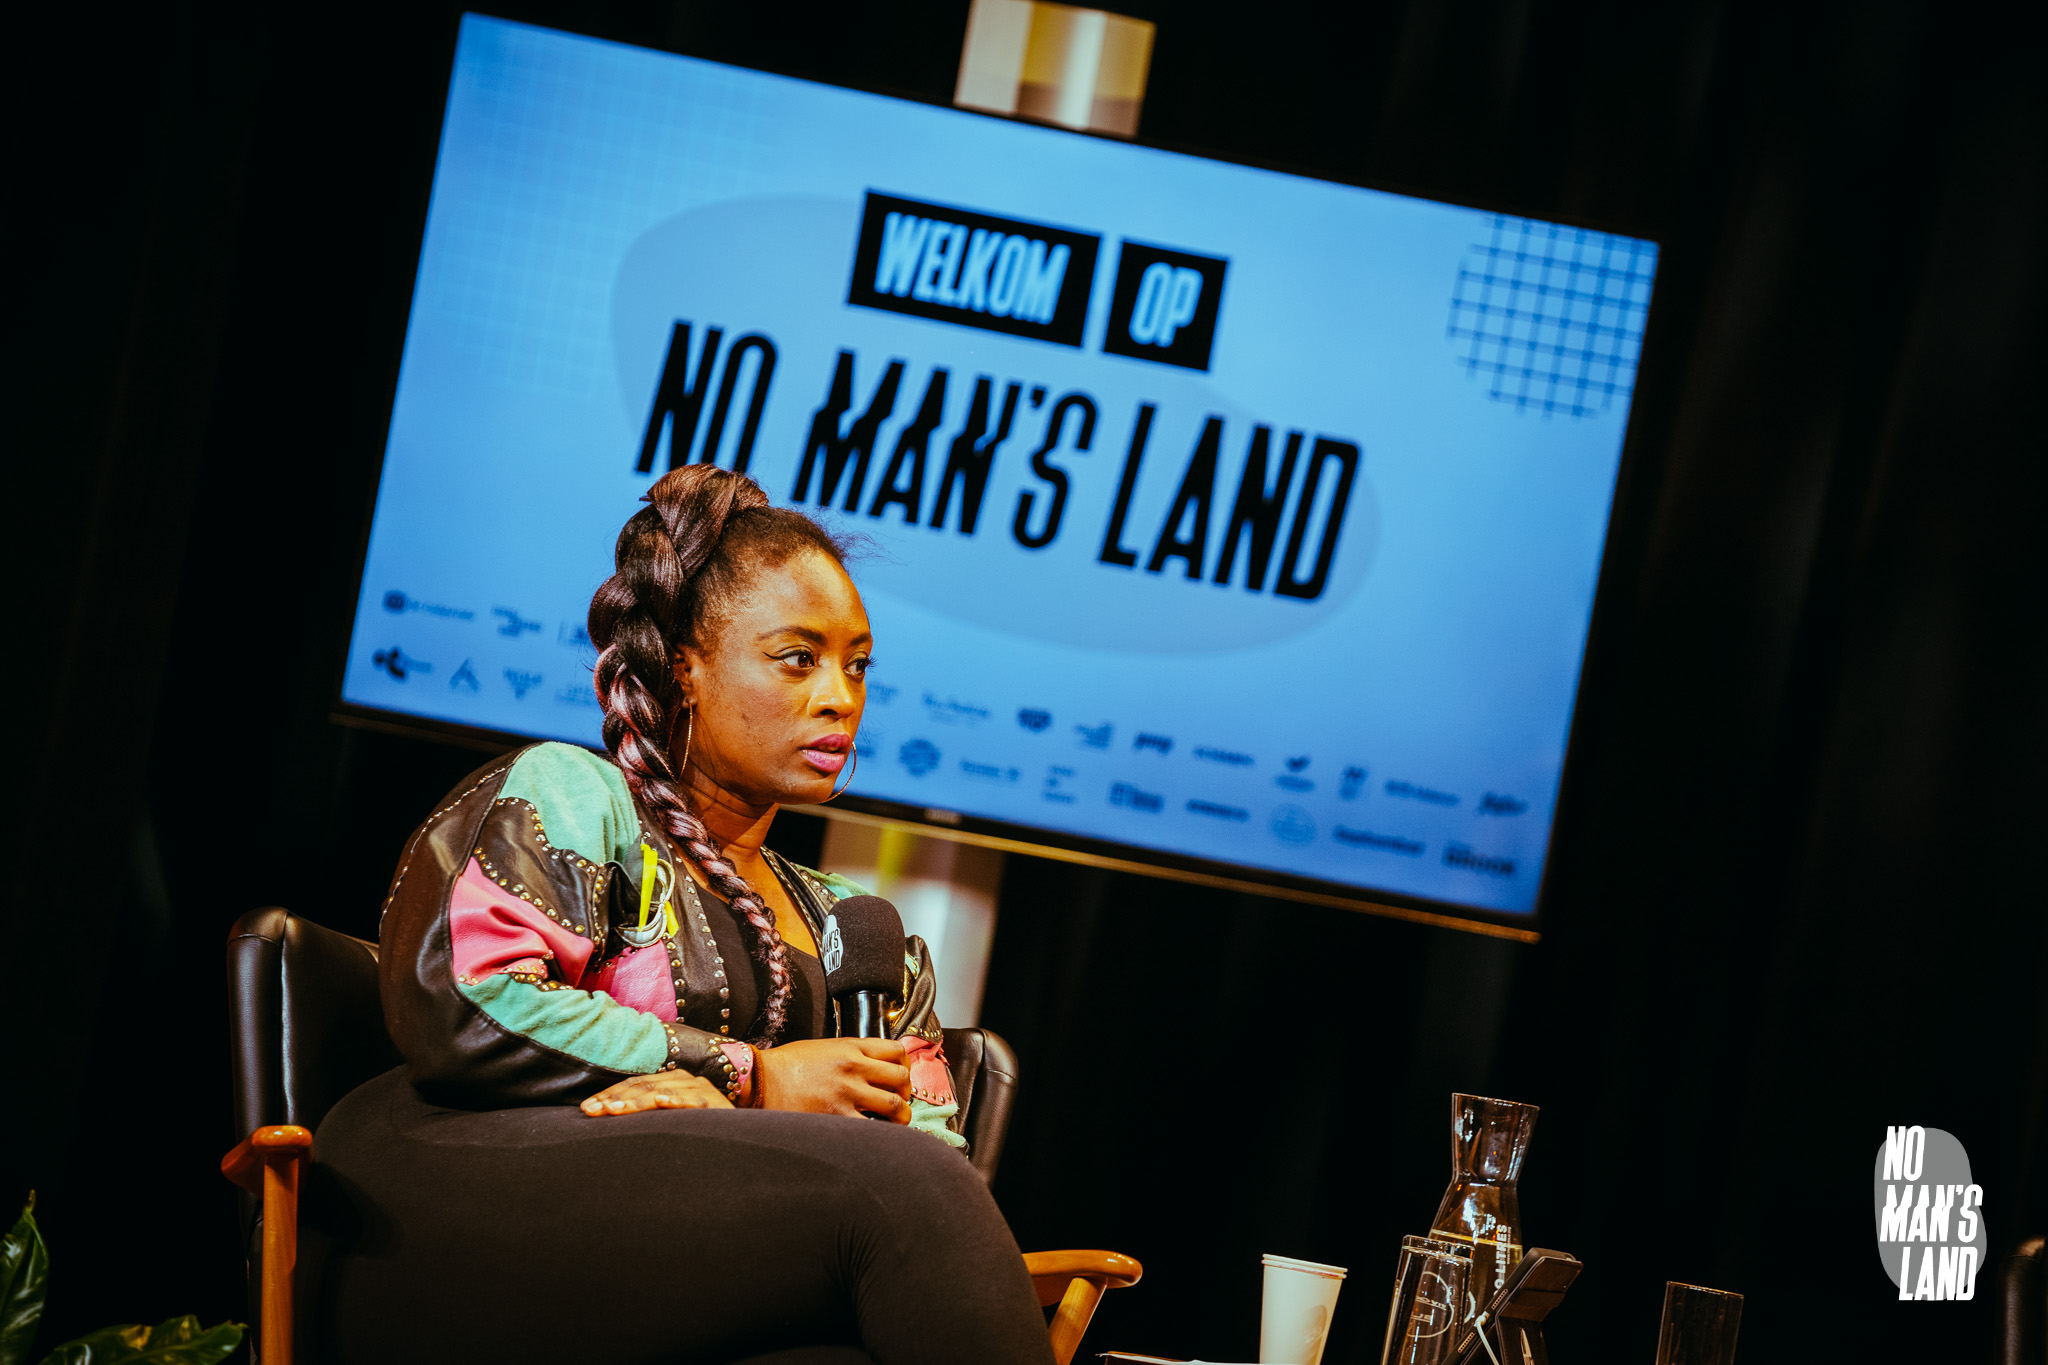 Interview Enter No Man’s Land (muziekconferentie)